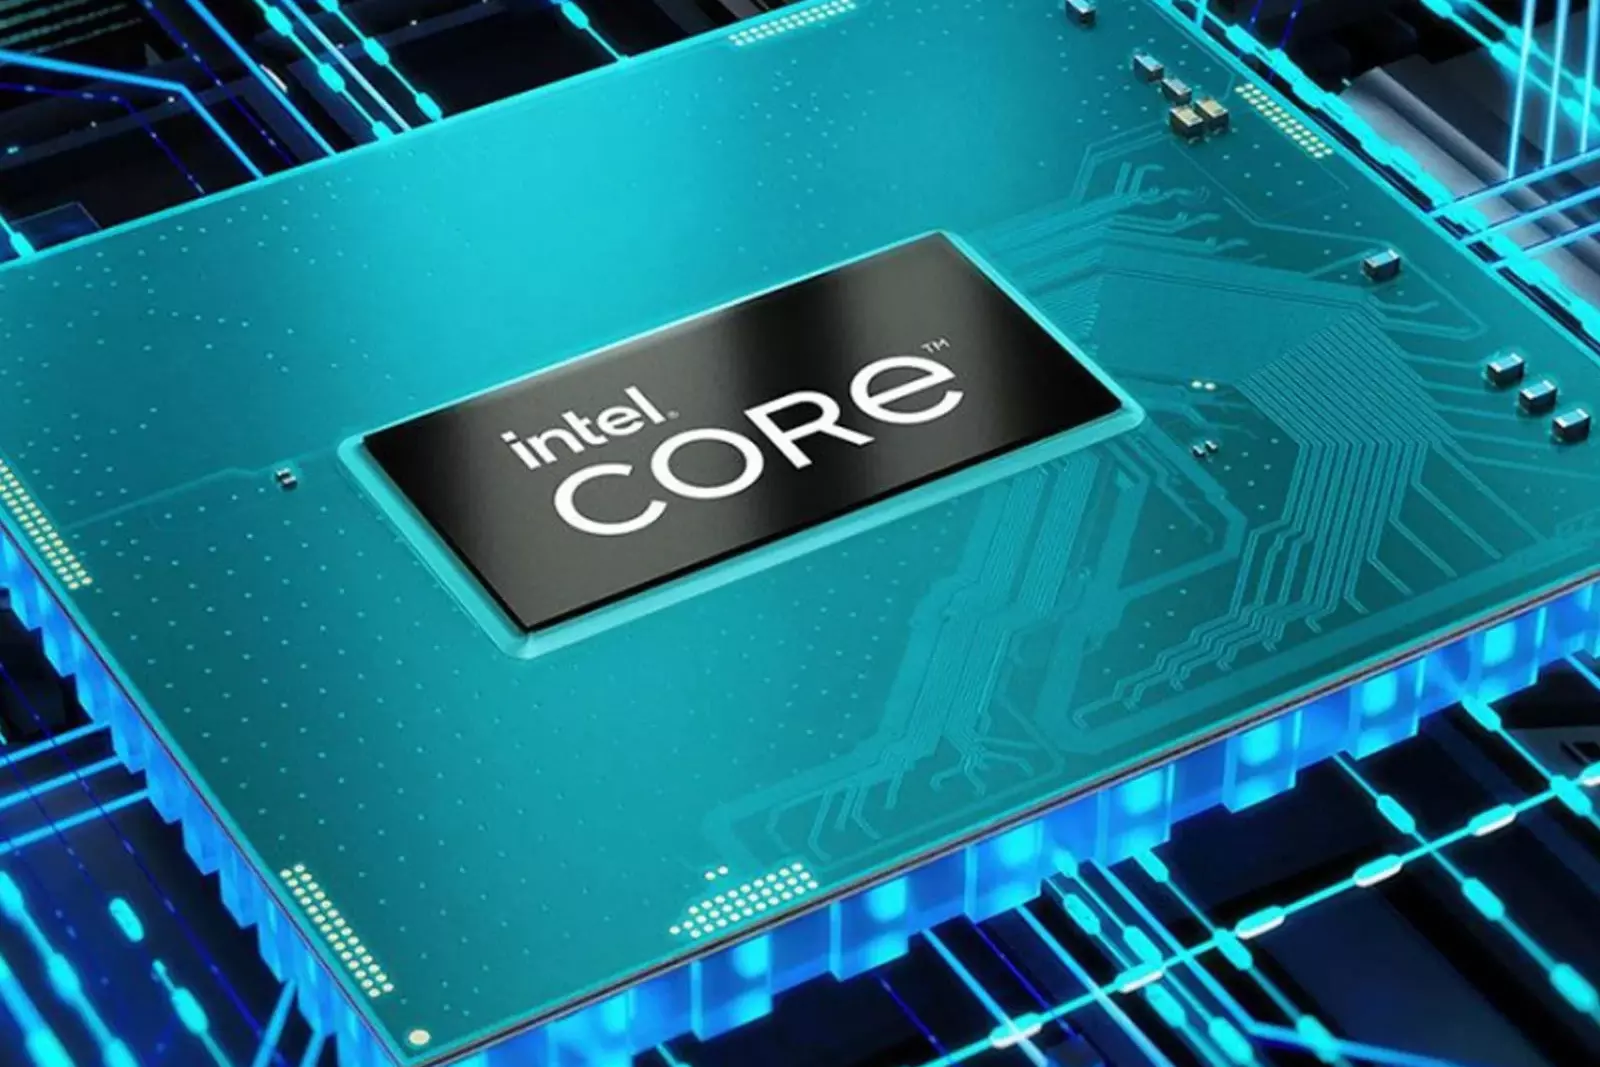 Intel programs. Intel Core i5-1240p. Core i5-1235u. I5-1240p. Intel cc150.